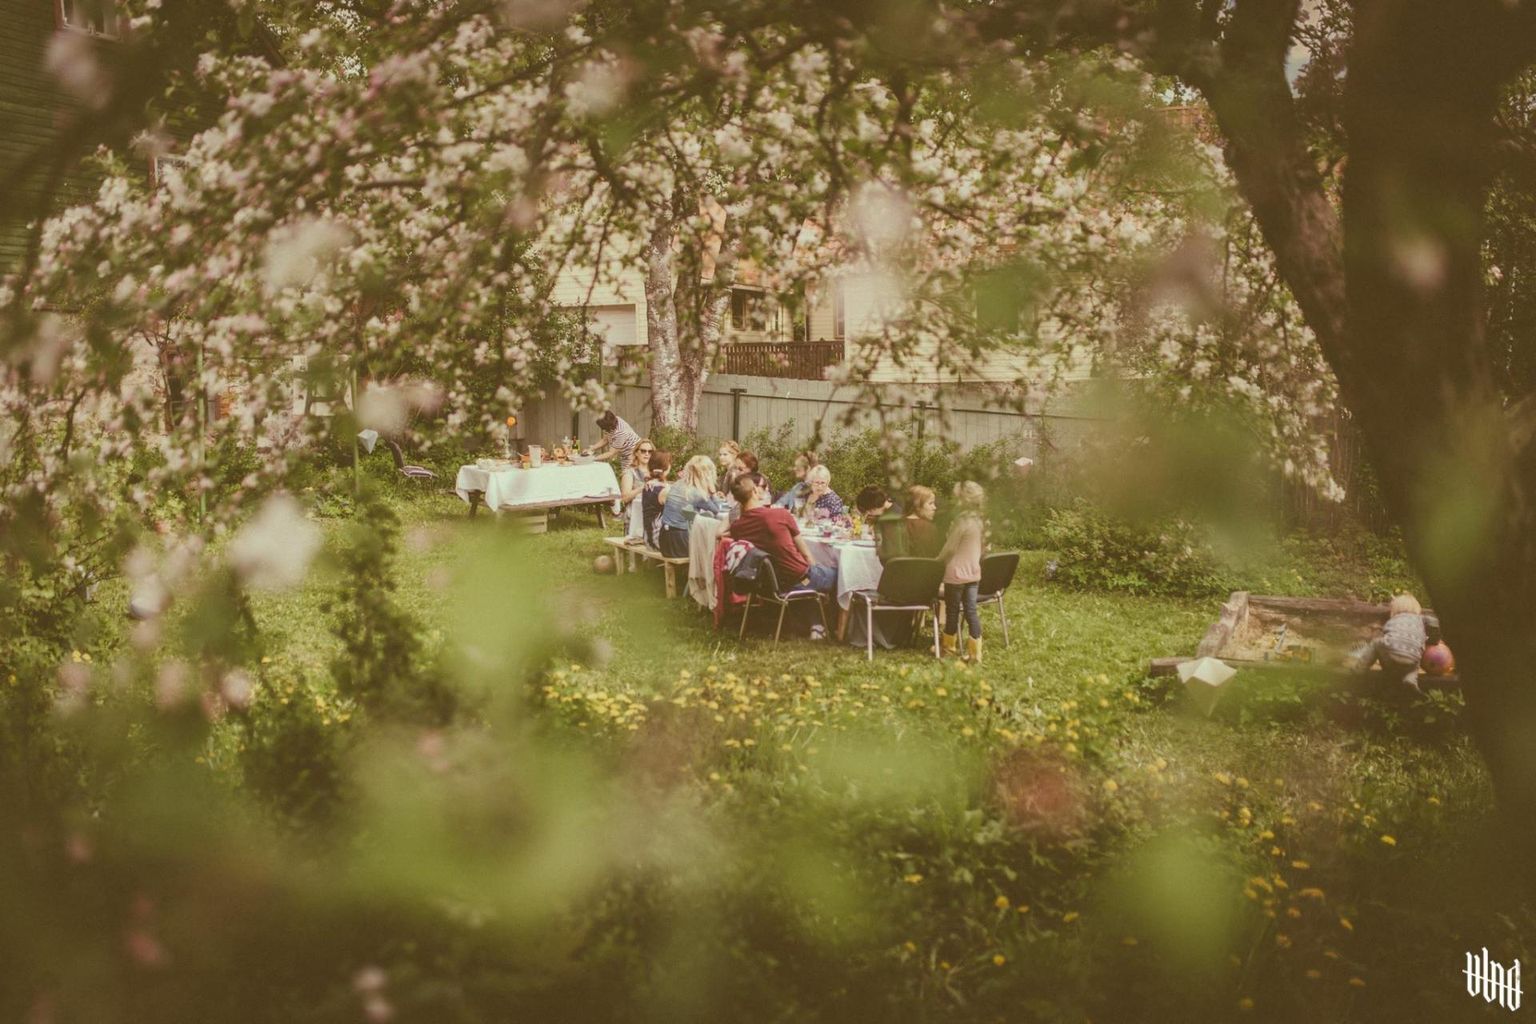 Näitus "Meie aedade lood" keskendub aedade ja inimese suhtele. Pildil on kodune õhtusöök Mäe tänava aias.